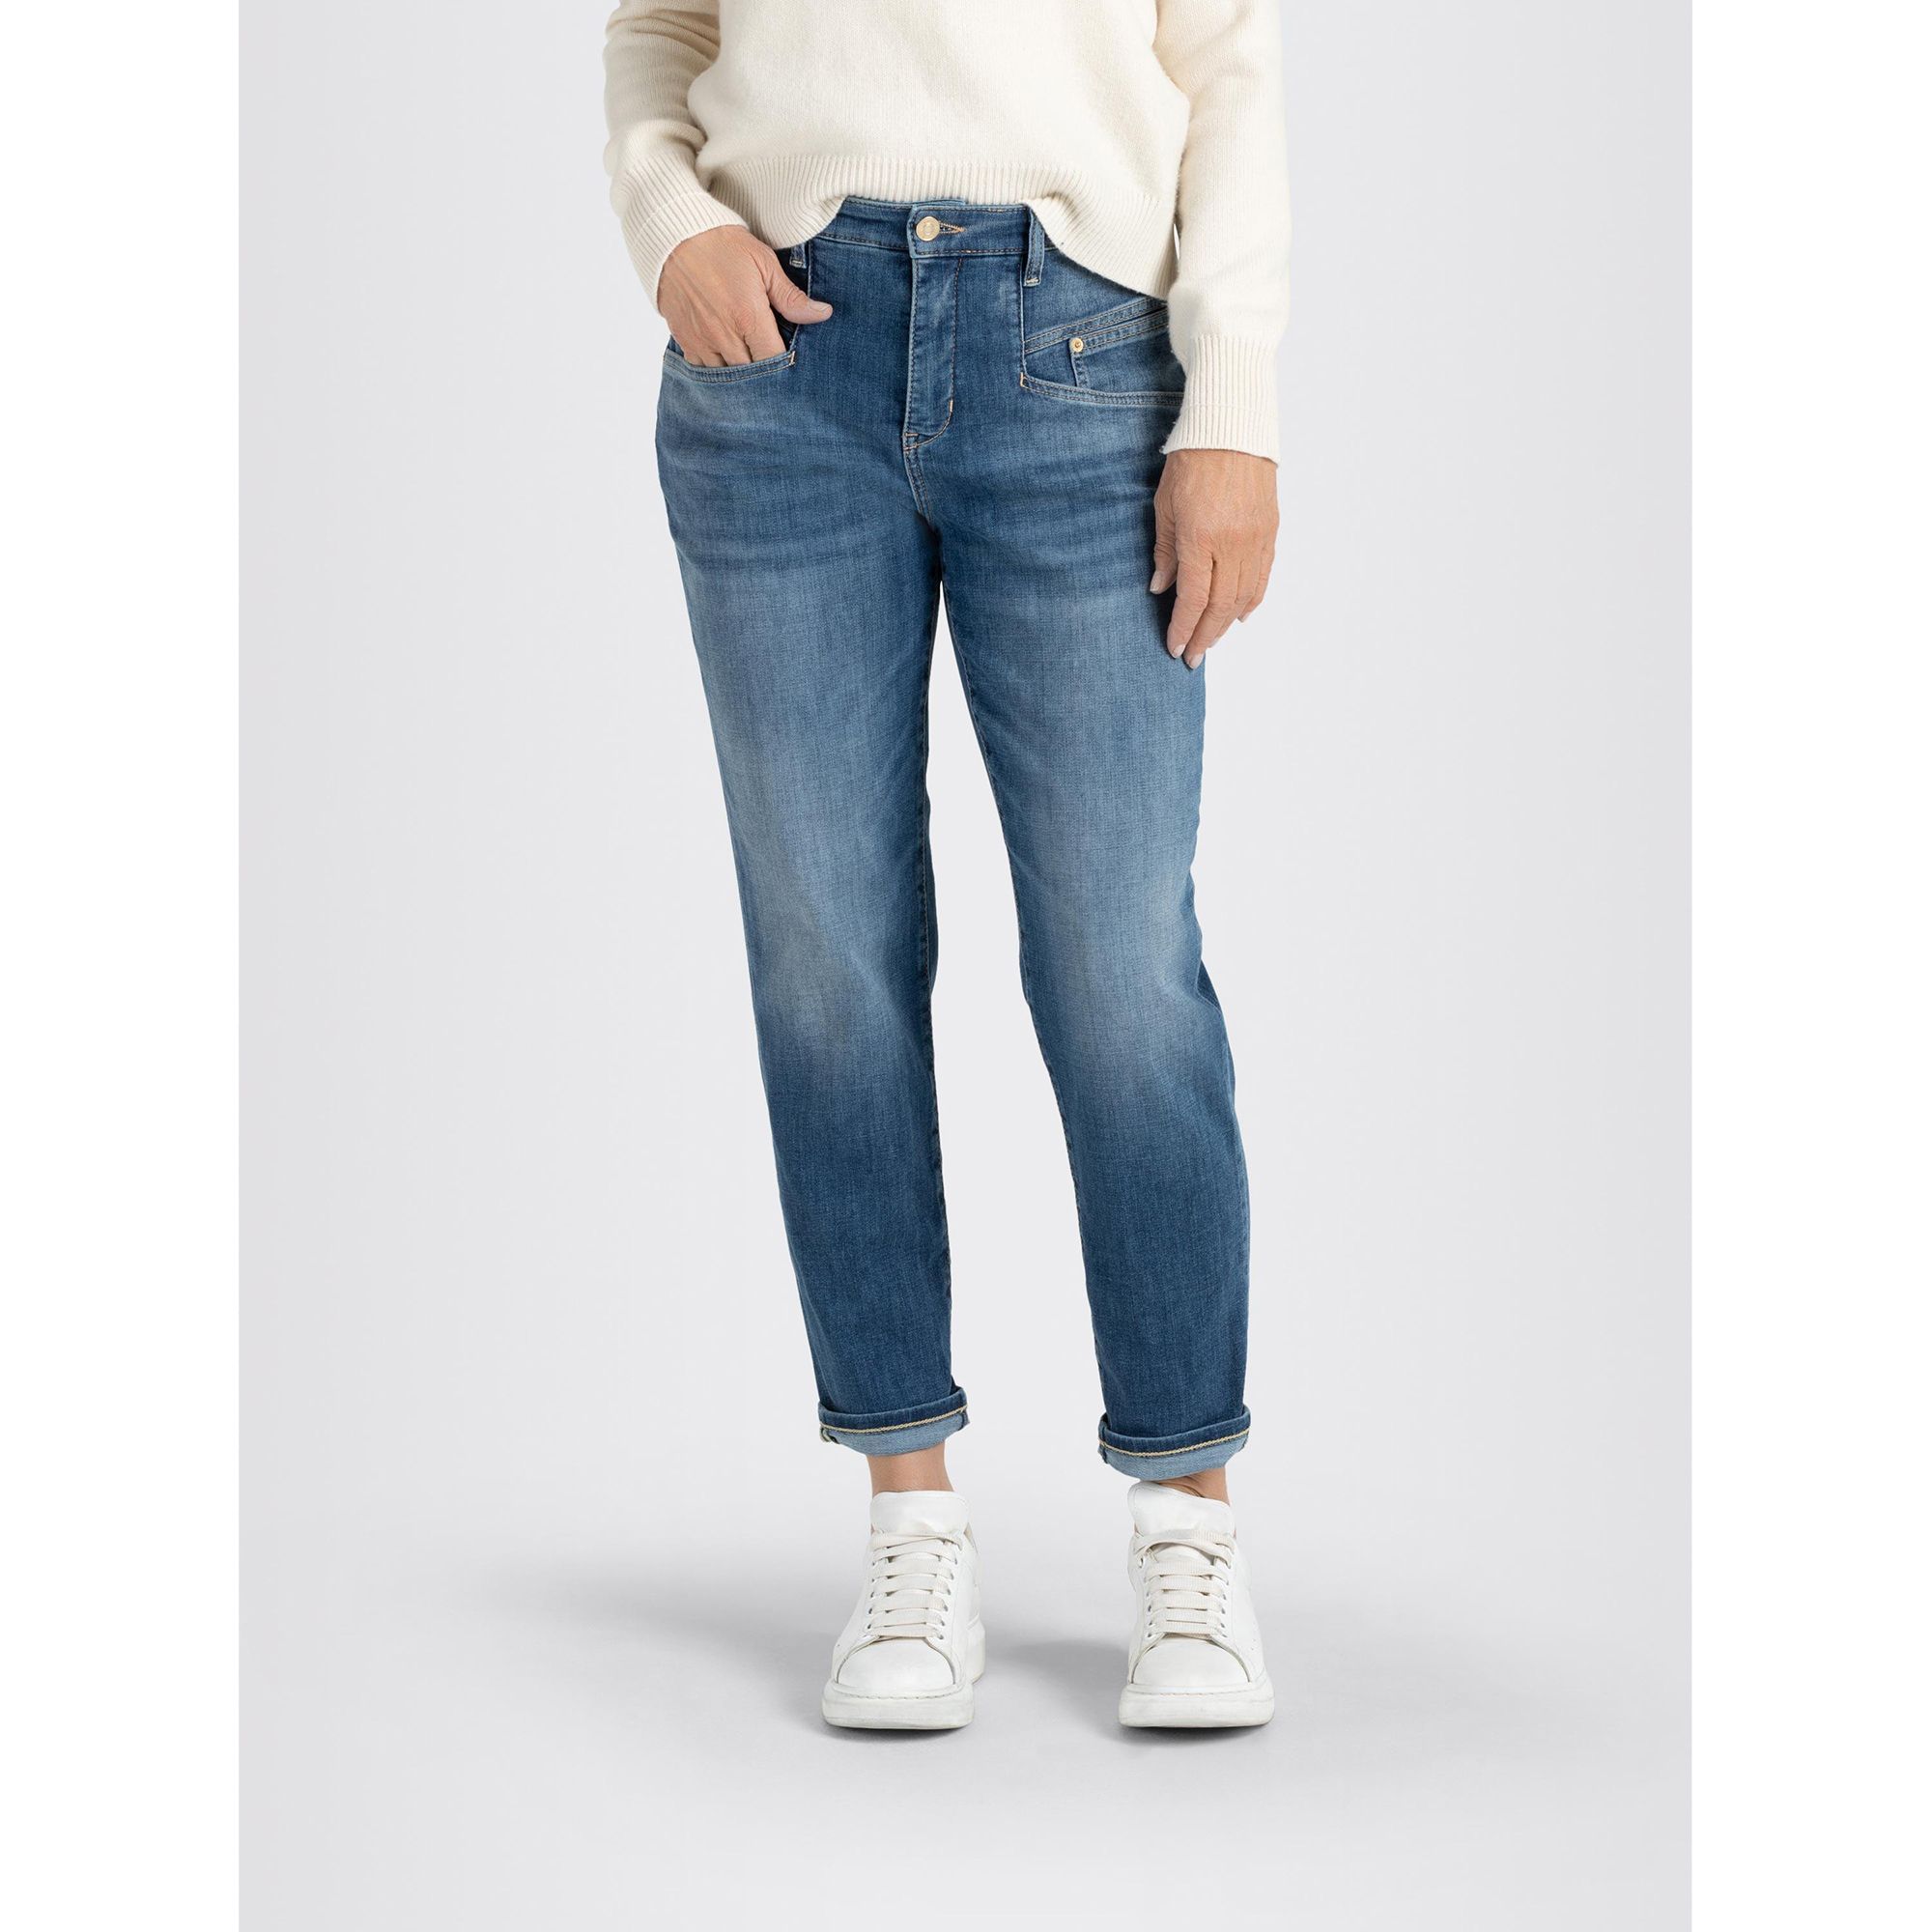 Jeans hohe konischer Rich MAC Beinverlauf Leibhöhe 5-Pocket-Style Carrot